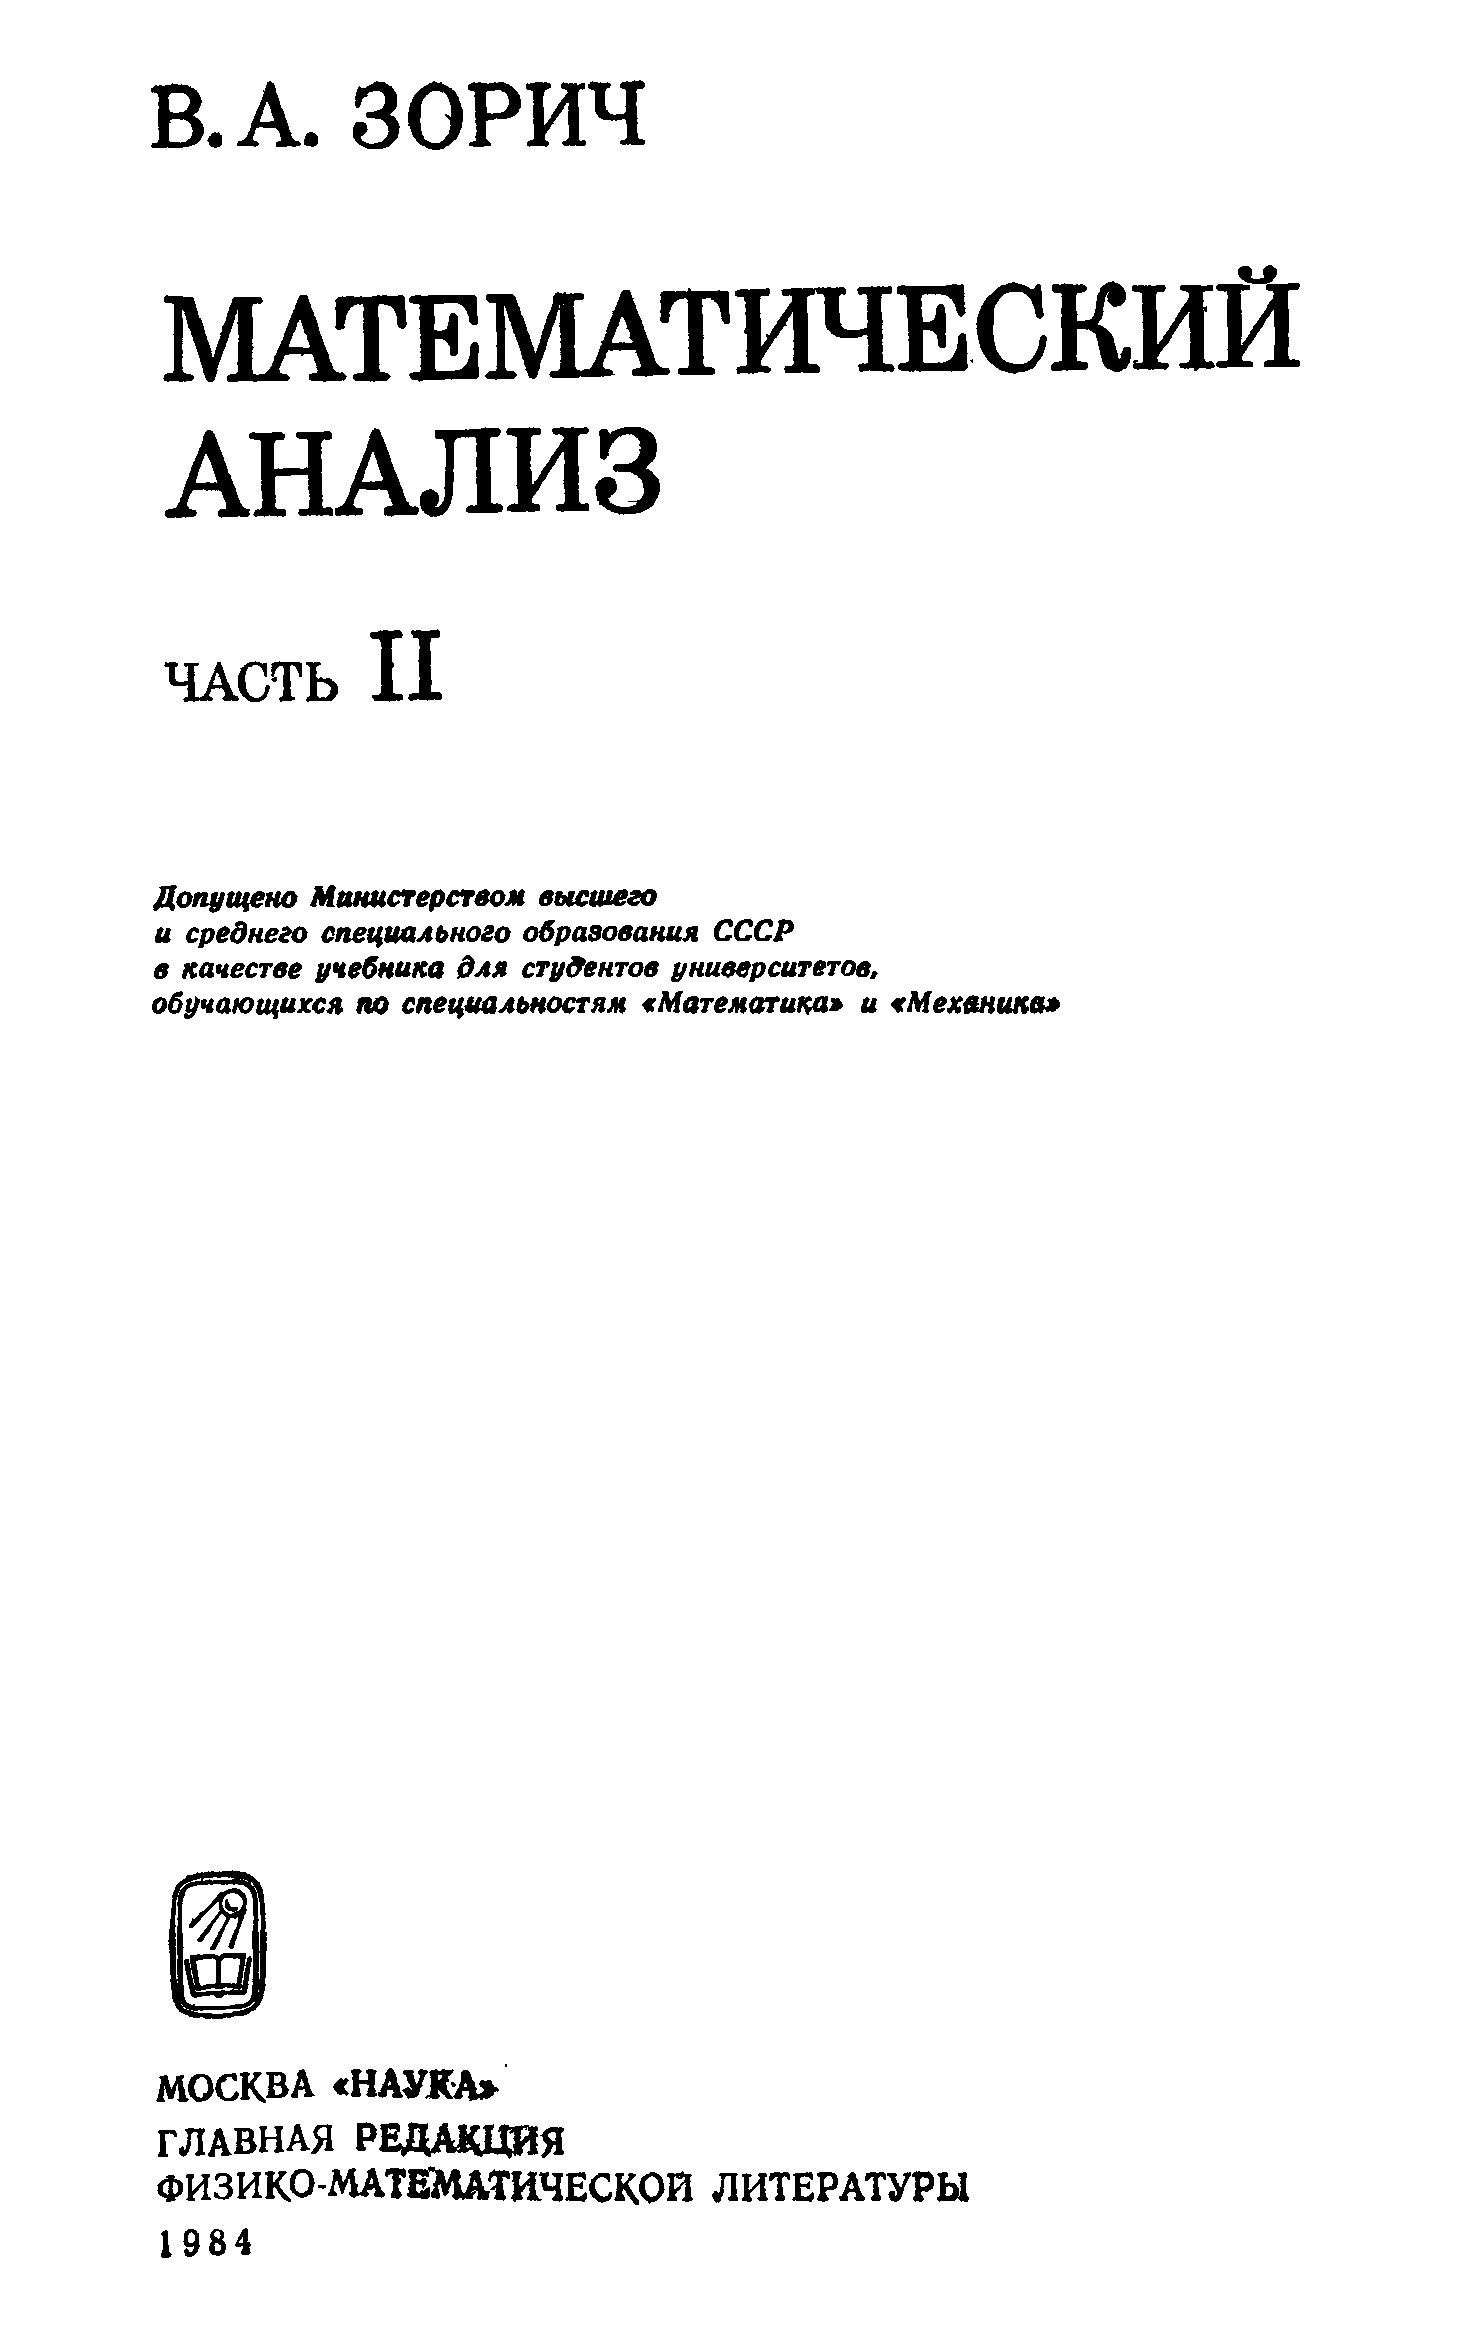 Математический анализ pdf